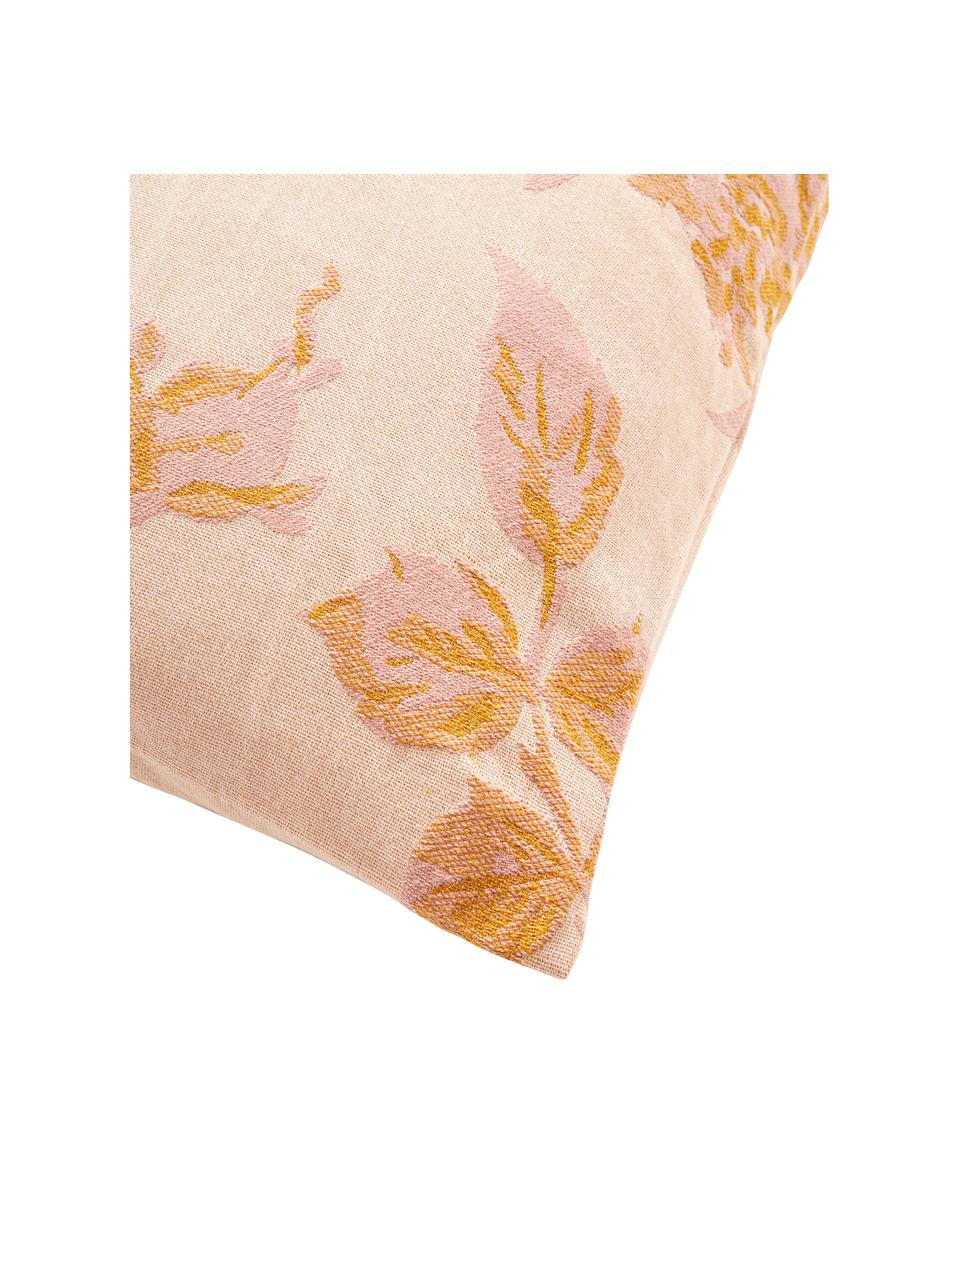 Katoenen kussenhoes Breight in oranje-roze, 100% katoen, Roze, oranje, beige, B 50 x L 50 cm